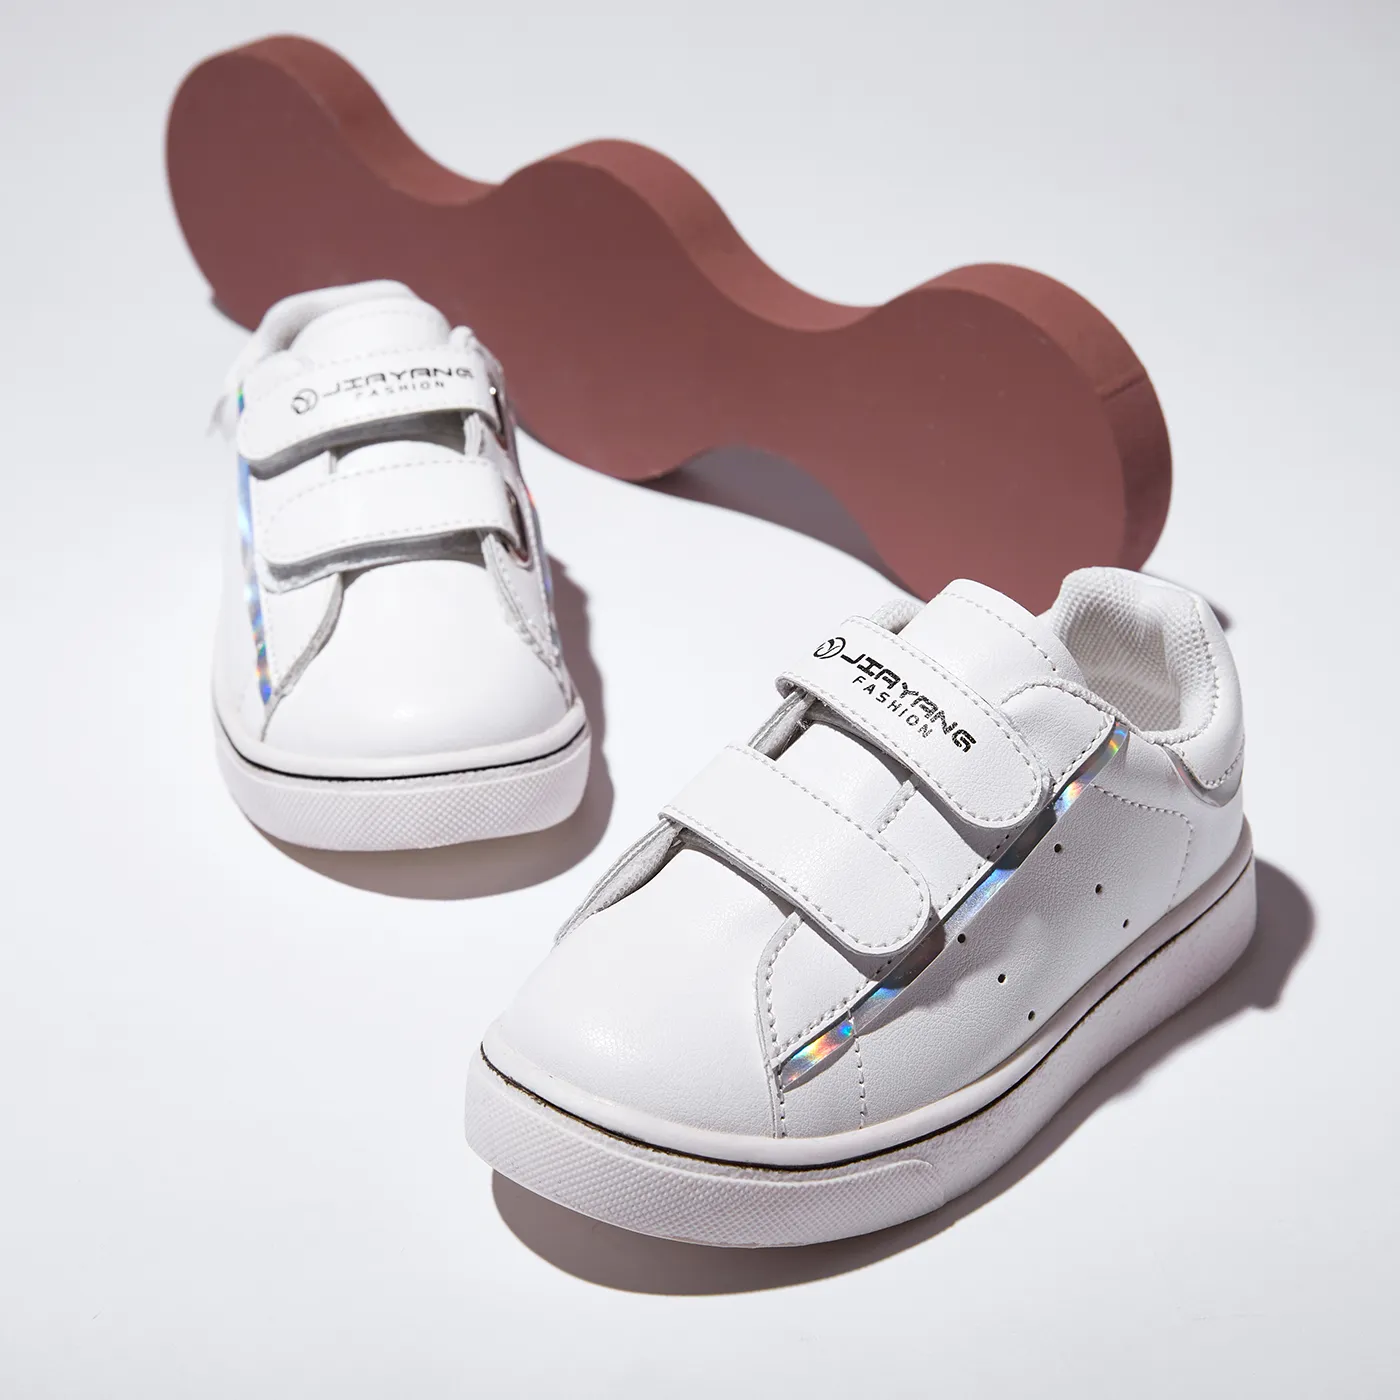 Chaussures Décontractées à Détails Holographiques Pour Tout-petits / Enfants